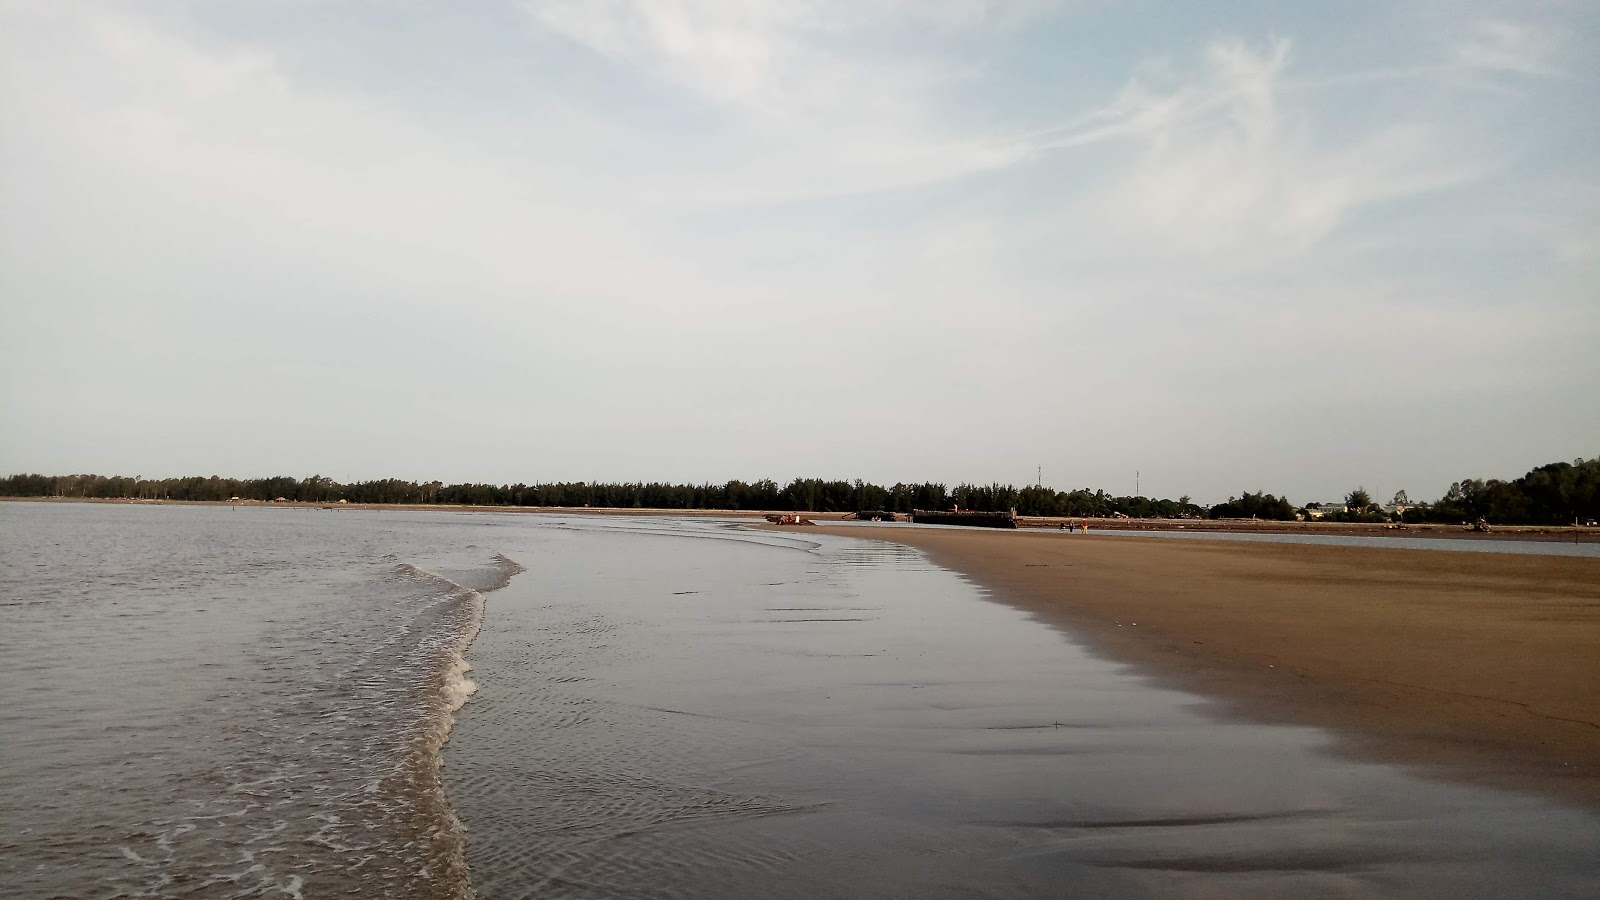 Vinh Son Sea'in fotoğrafı geniş plaj ile birlikte